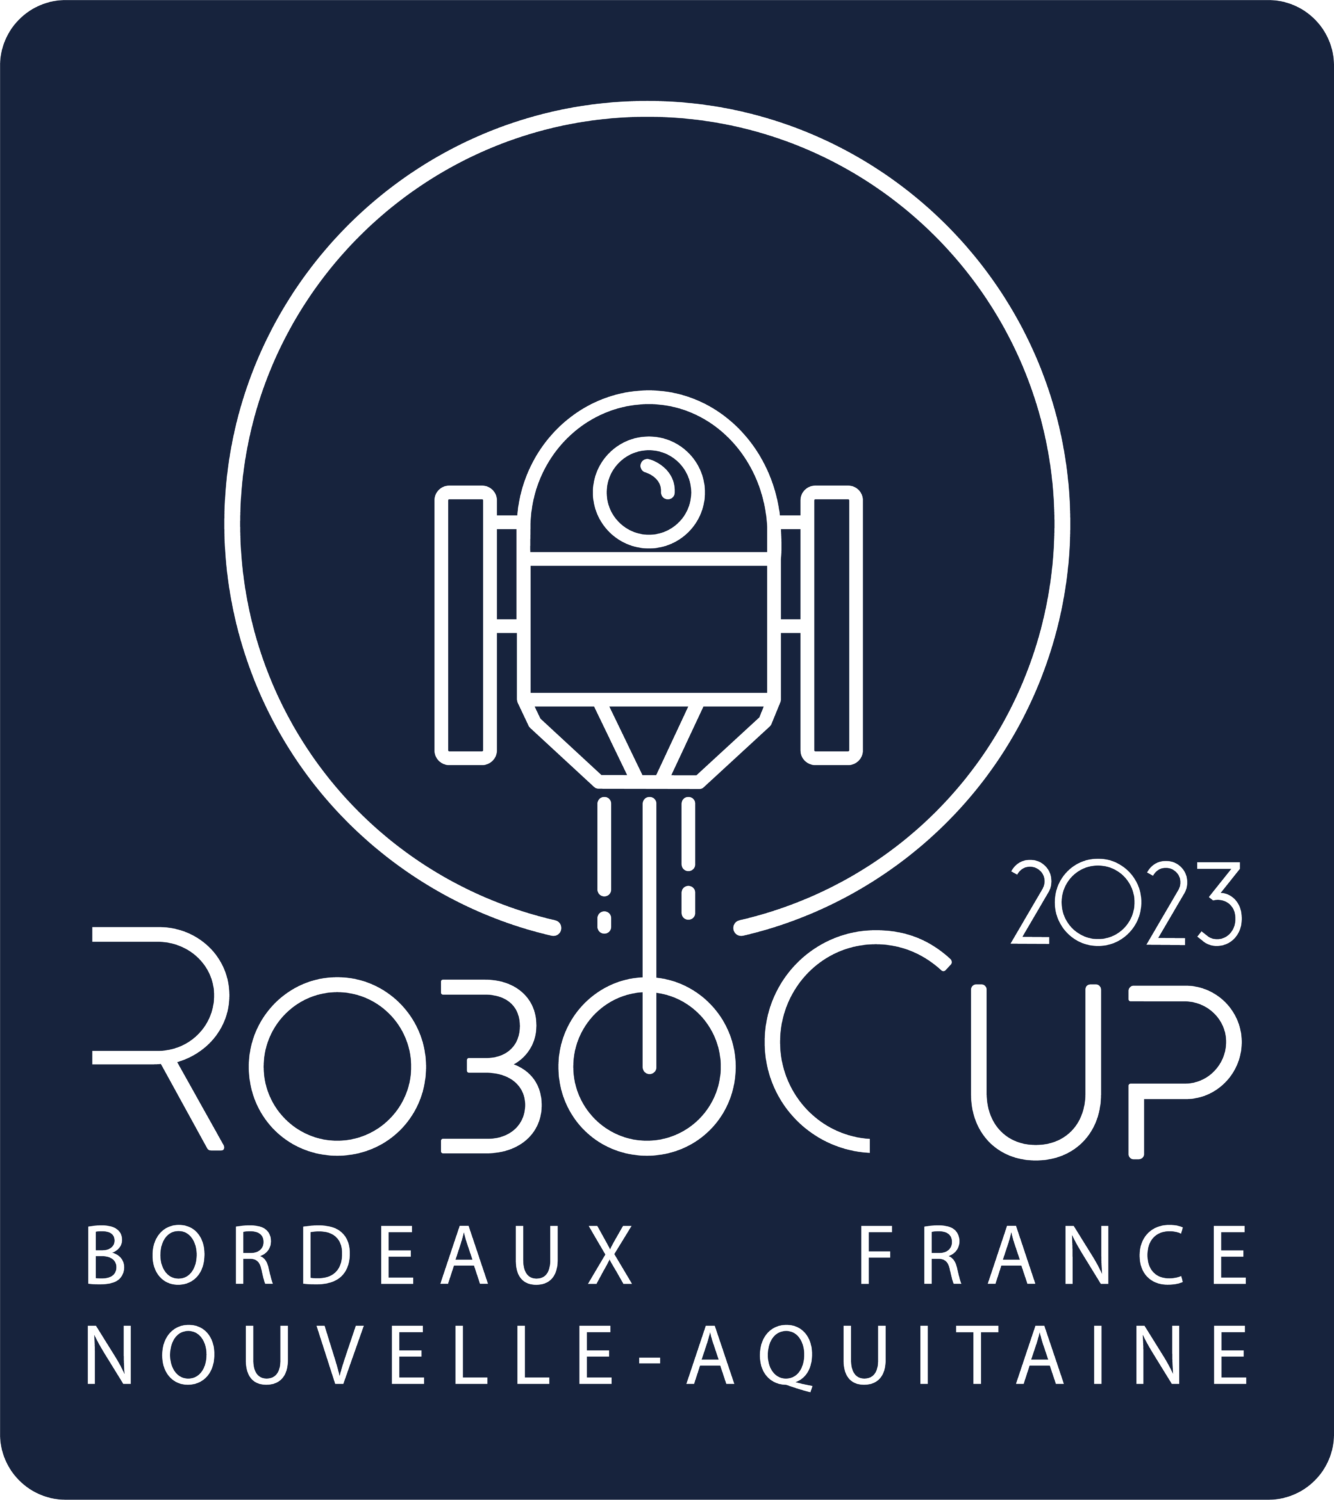 RoboCup 2023 Bordeaux, France